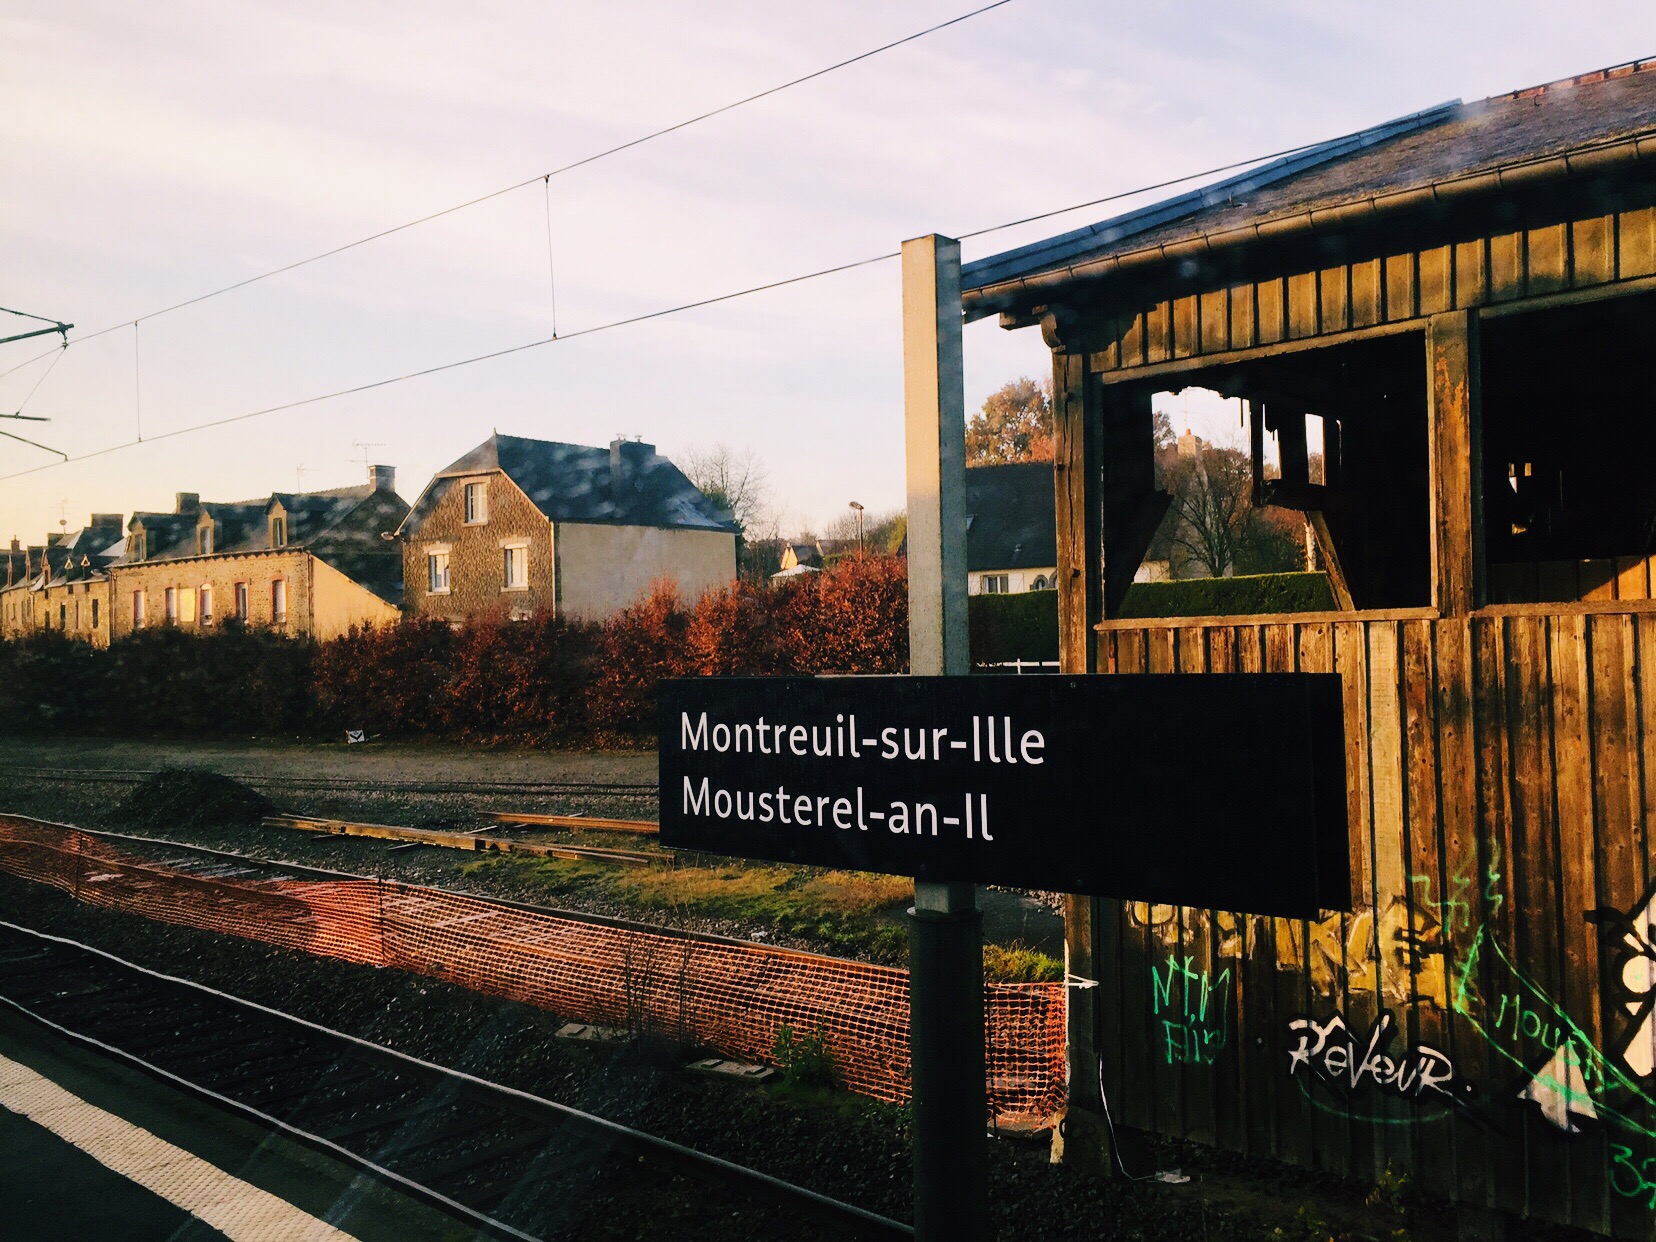 火车从巴黎开往圣马洛 清晨有一种不一样的美 如梦如初 —> 到达圣马洛 老城适合随便走走逛逛 买的面